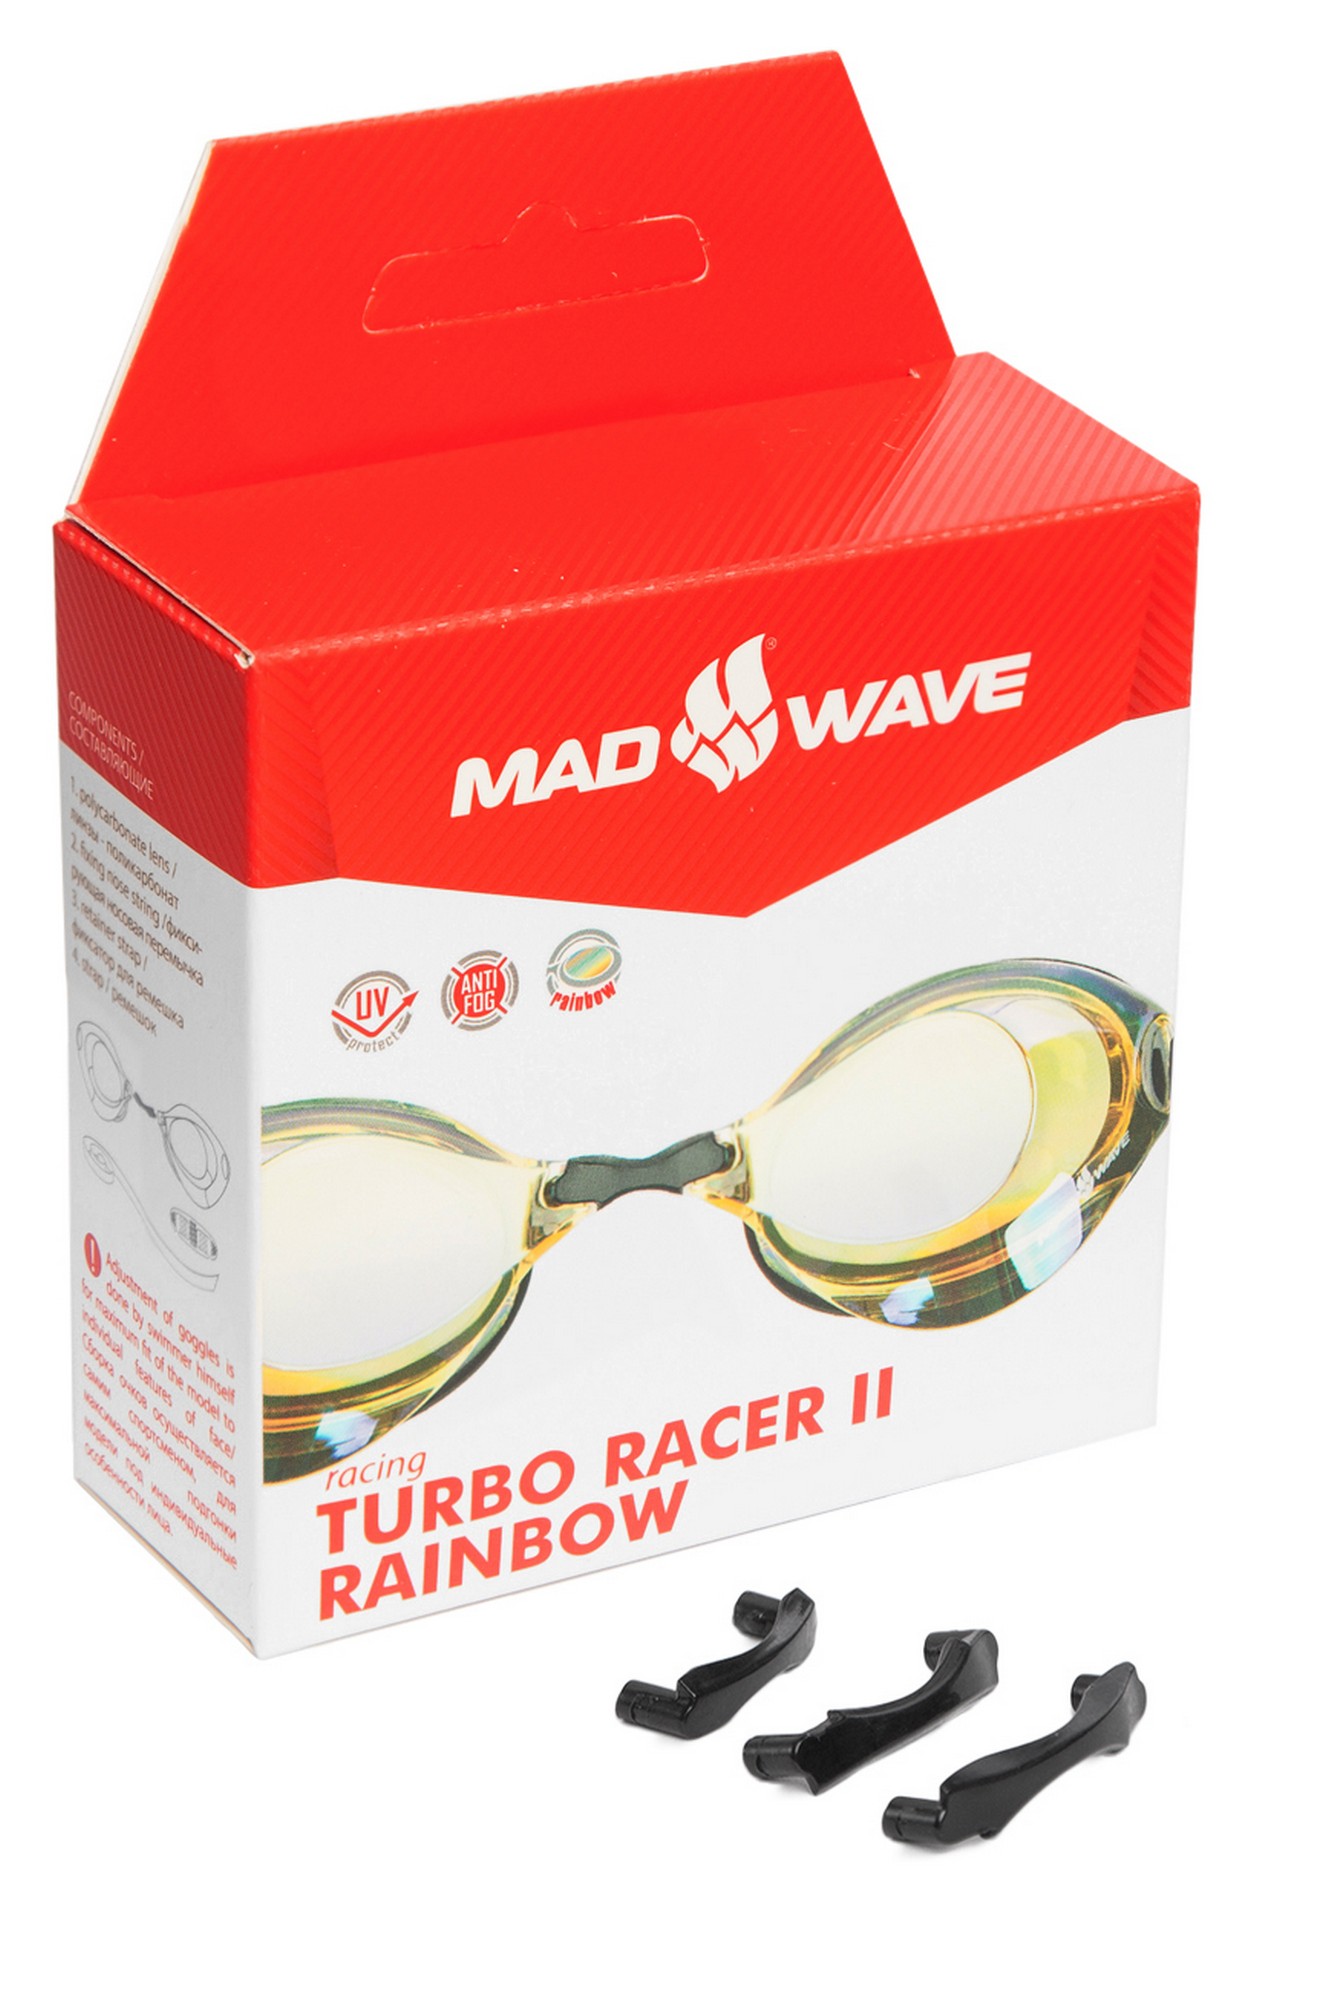 Стартовые очки Mad Wave Turbo Racer II Rainbow M0458 06 0 06W 1332_2000